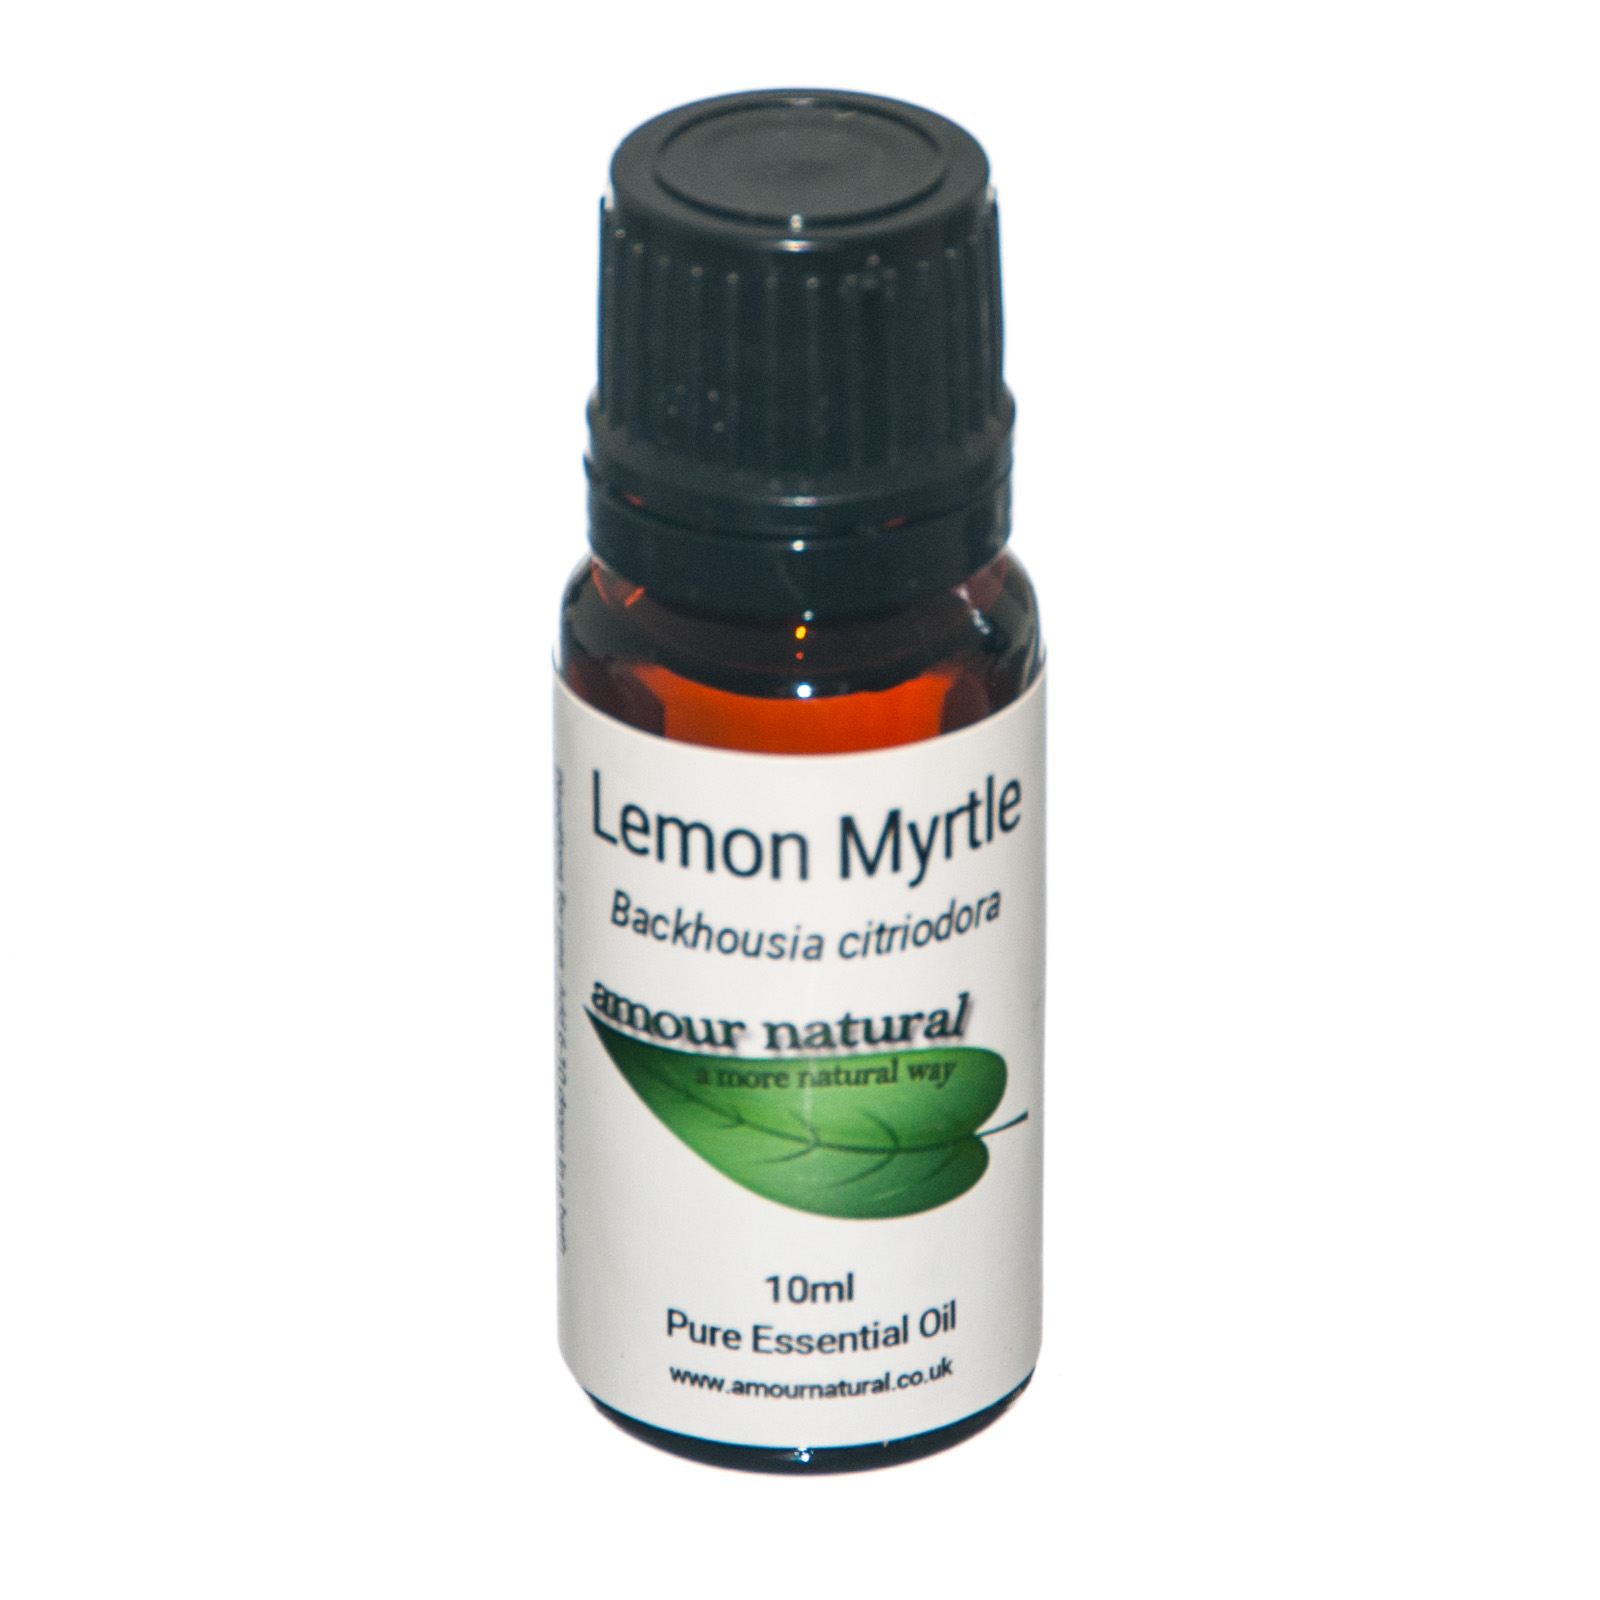 Lemon myrtle essential oil